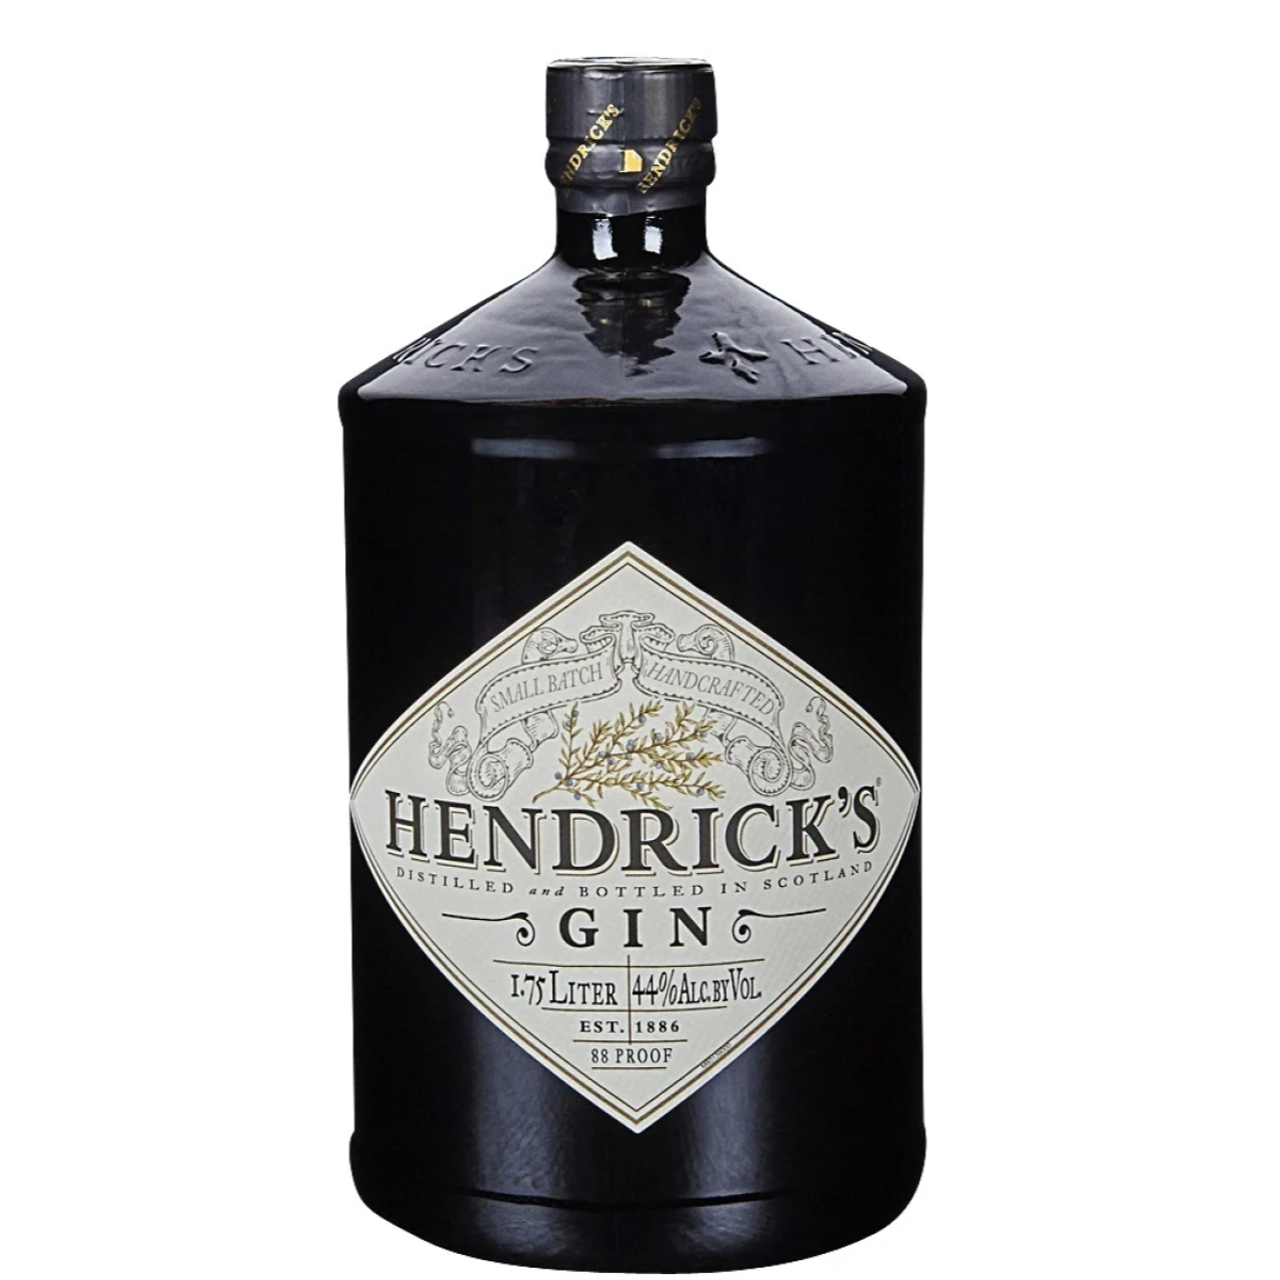 Hendrick's Gin – Scottish Gin